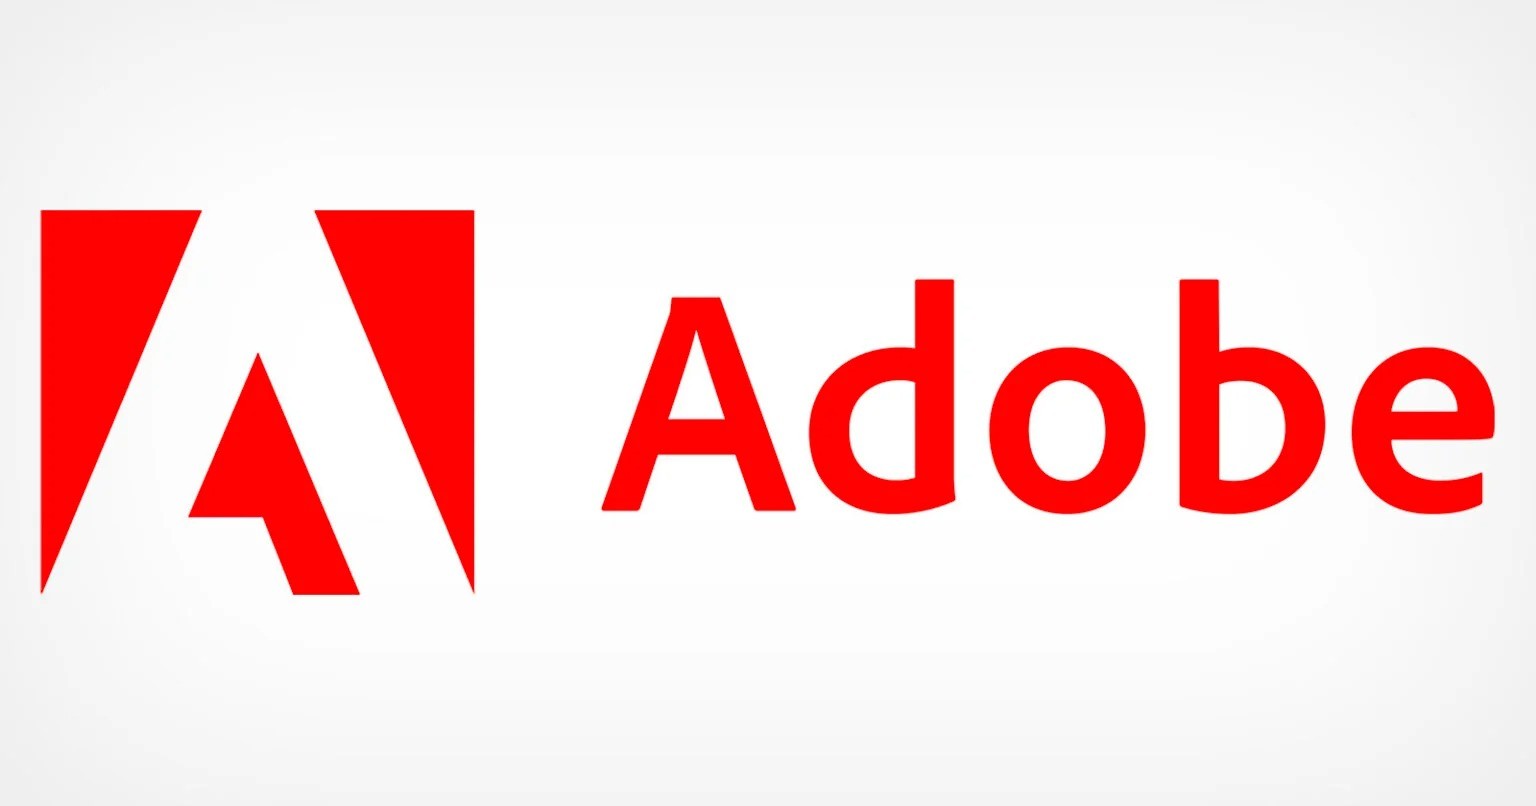 Adobe wywołało burzę, teraz próbuje uśmierzyć gniew użytkowników